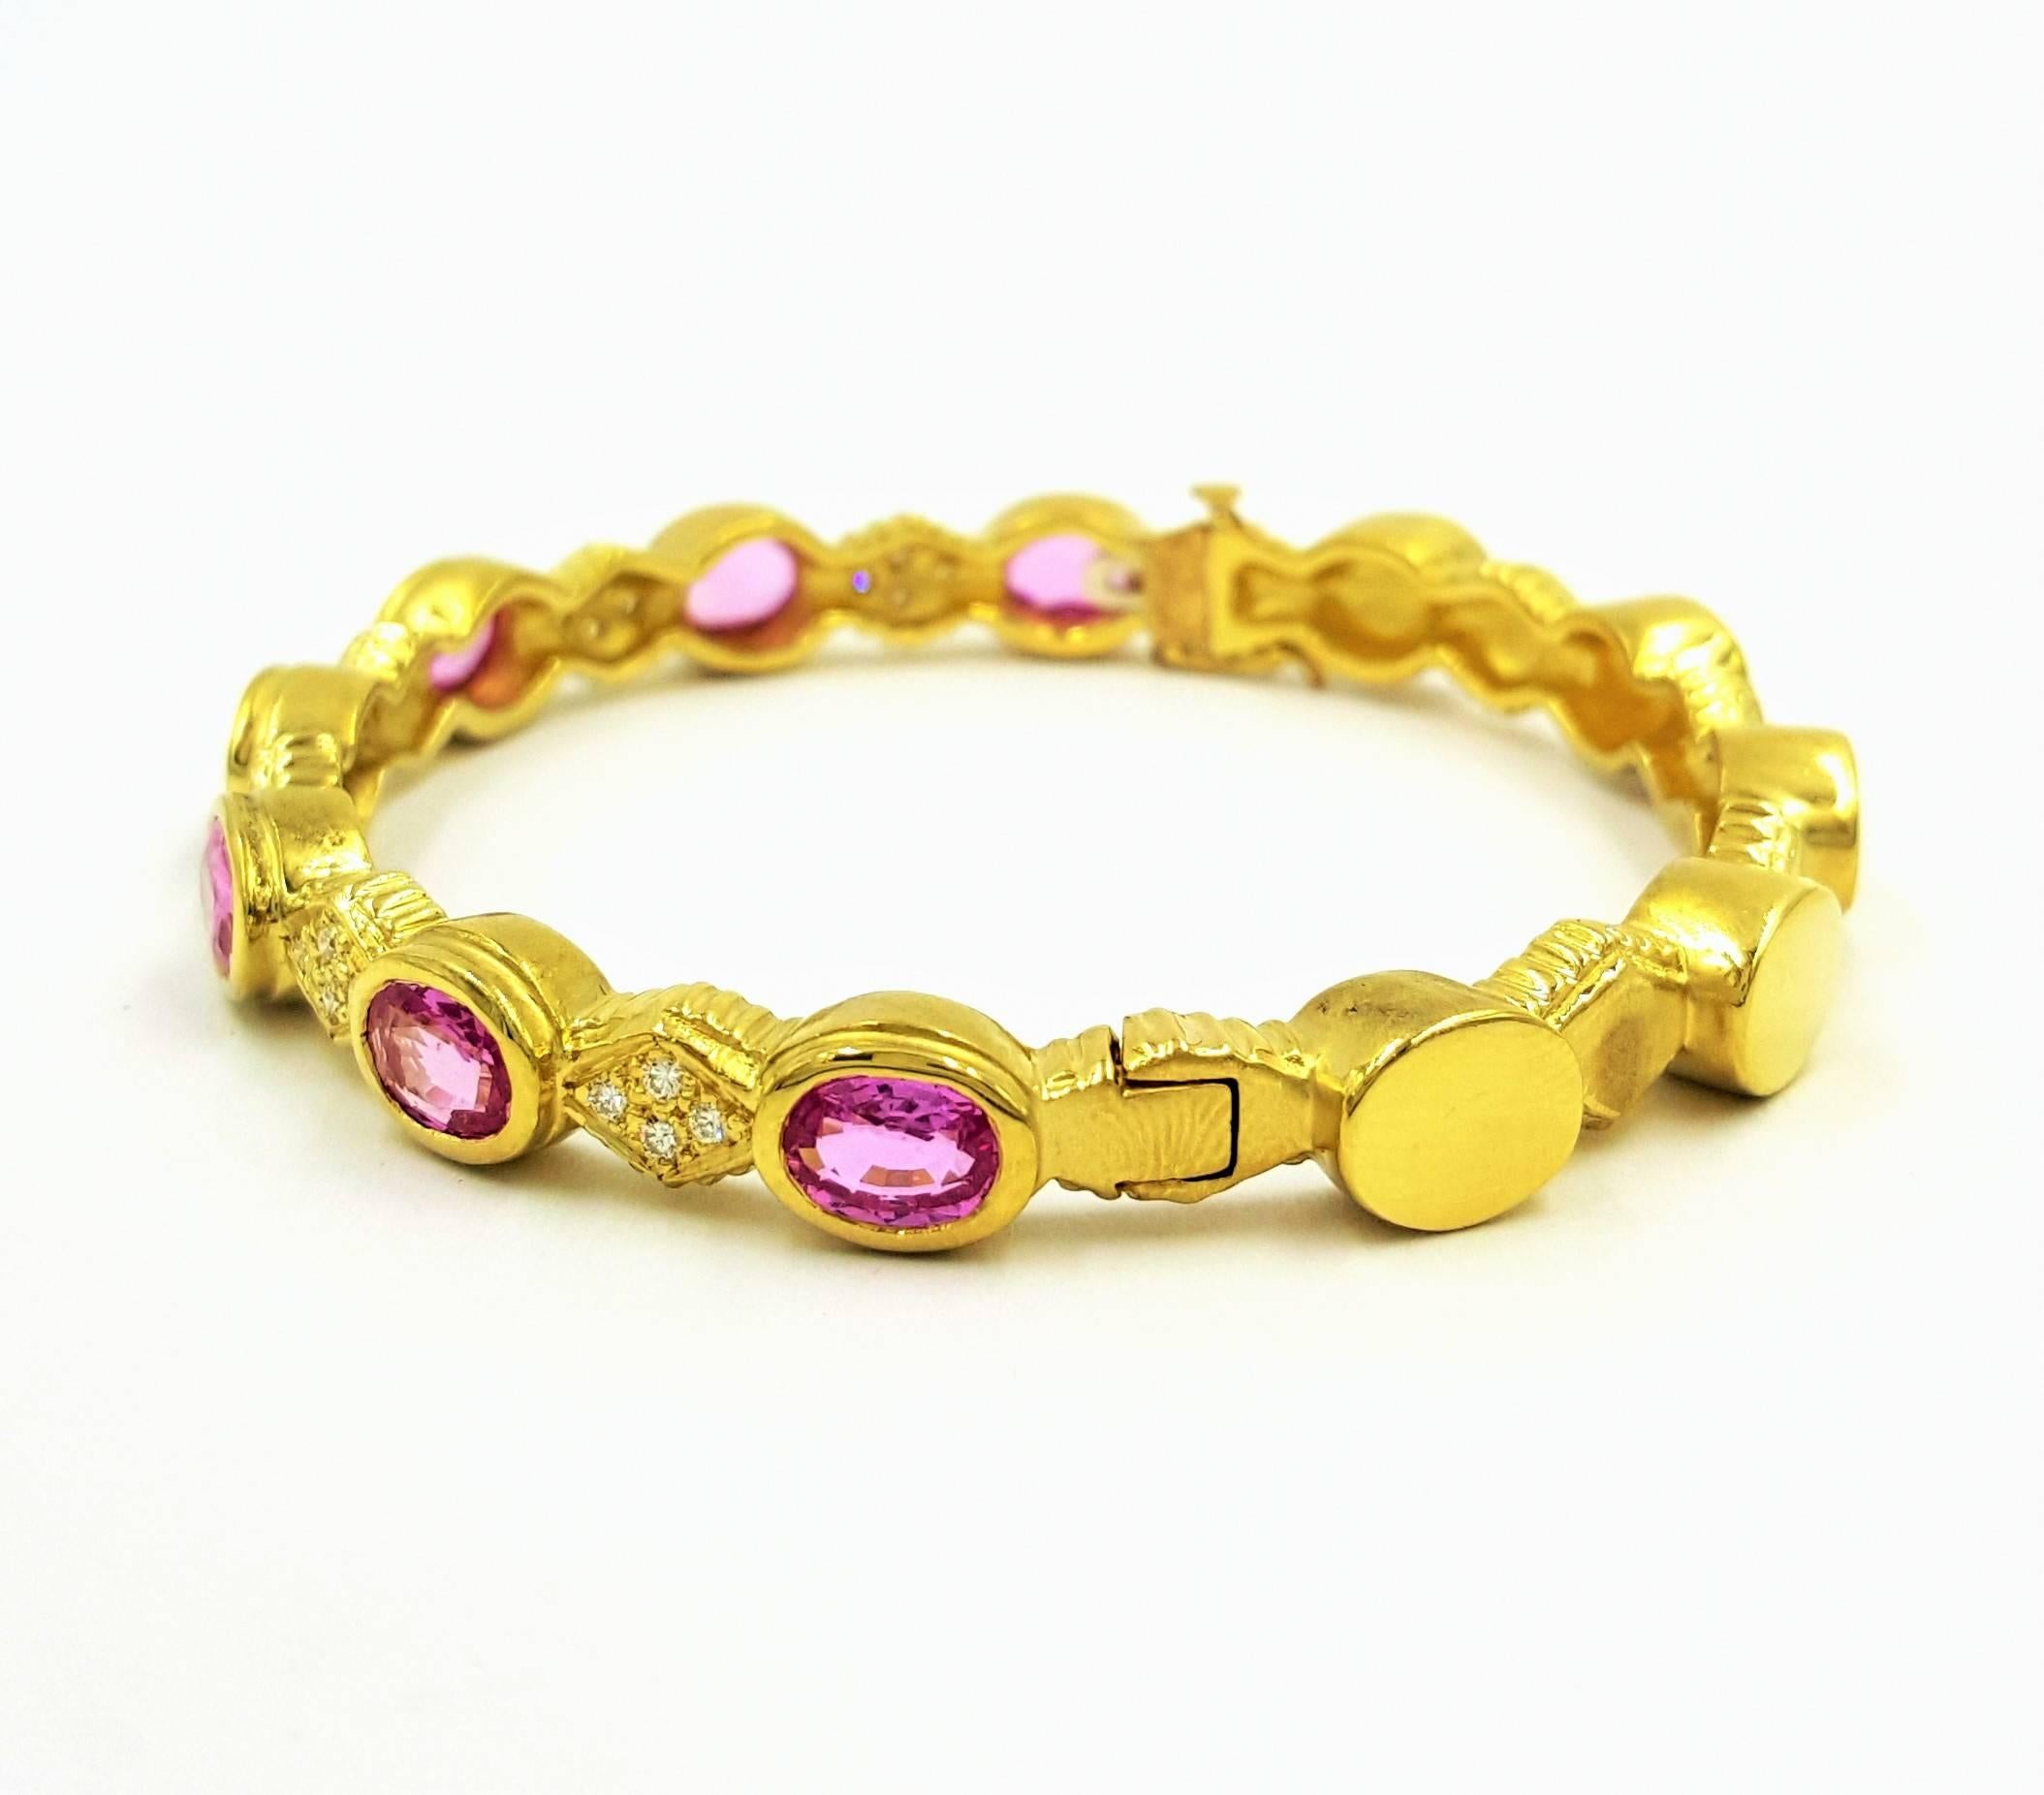 Doris Panos 7 Carats Deep Pink Sapphires Diamonds Gold Bracelet In Excellent Condition For Sale In Scottsdale, AZ